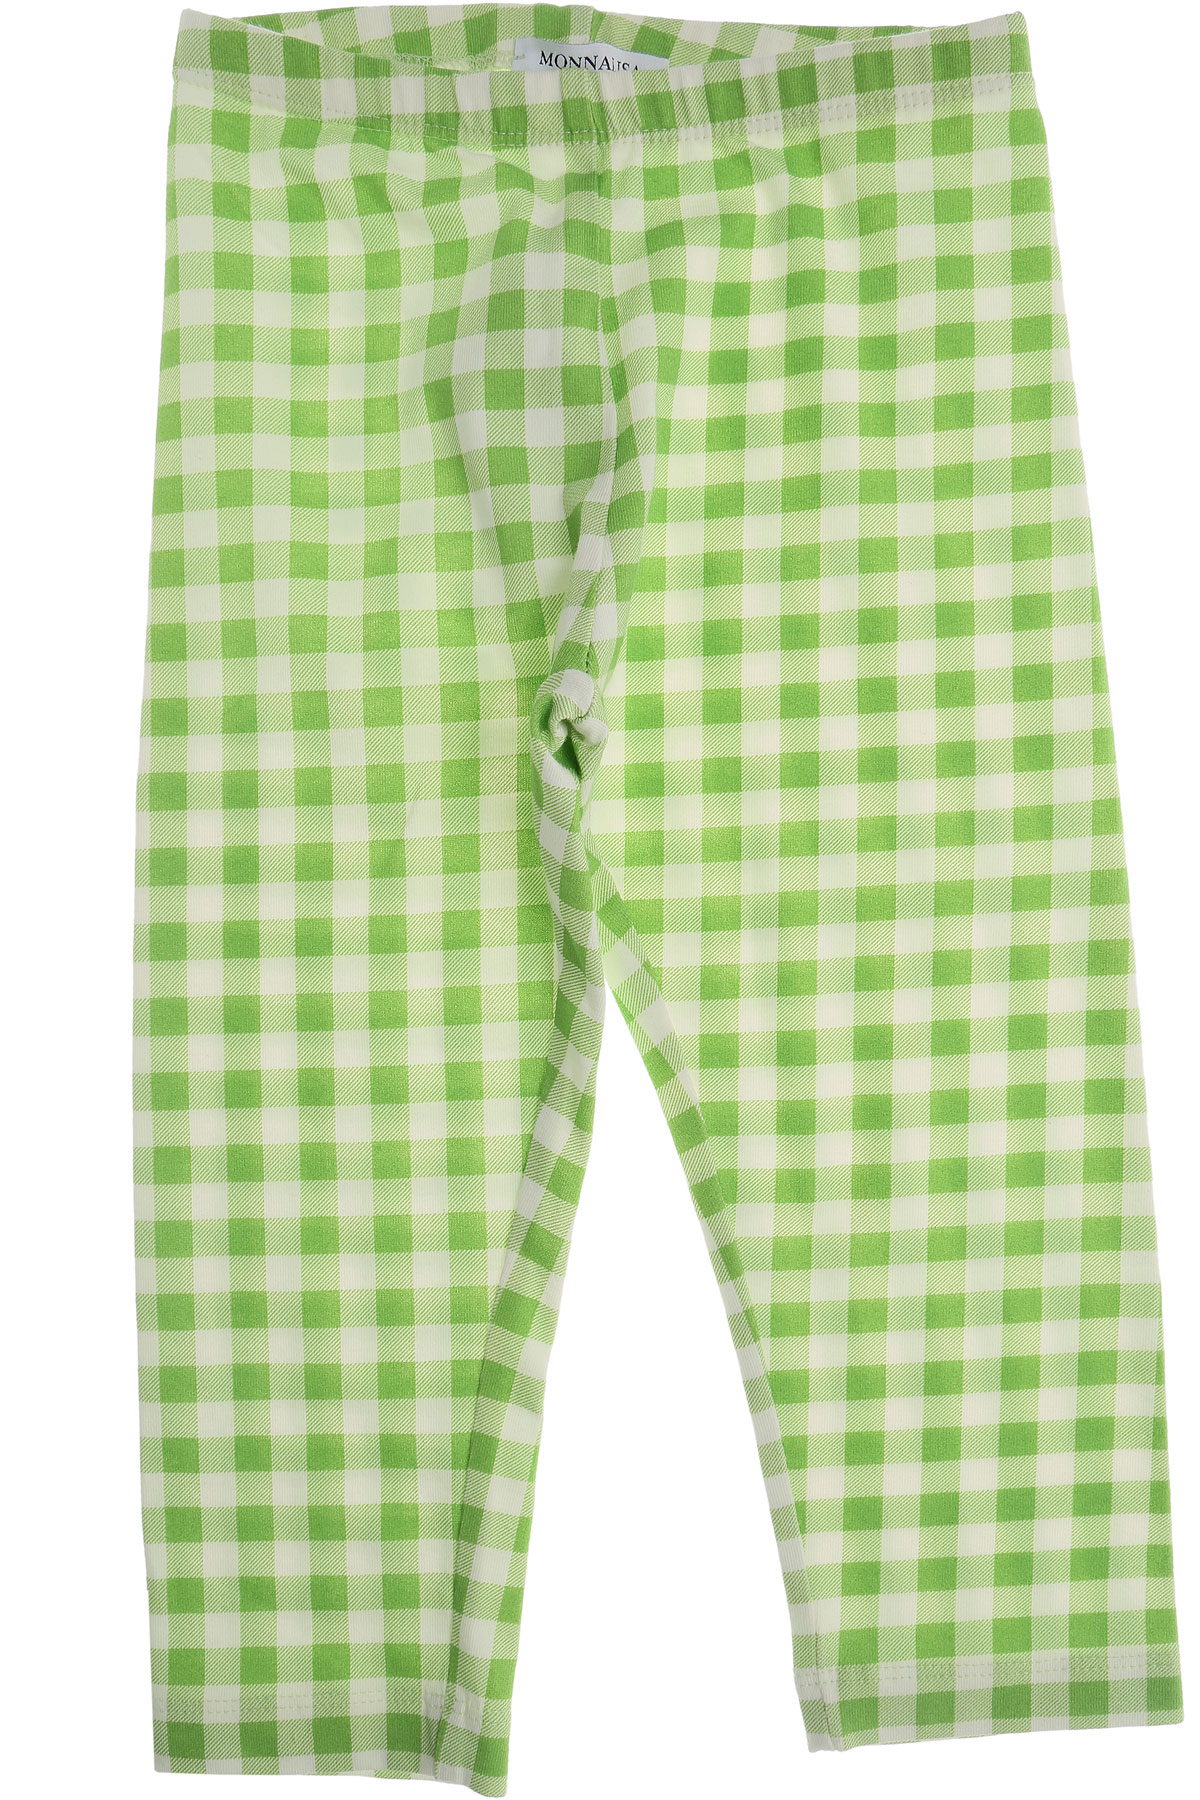 Monnalisa Pantalons Enfant pour Fille Outlet, Vert, Coton, 2017, 3Y 4Y